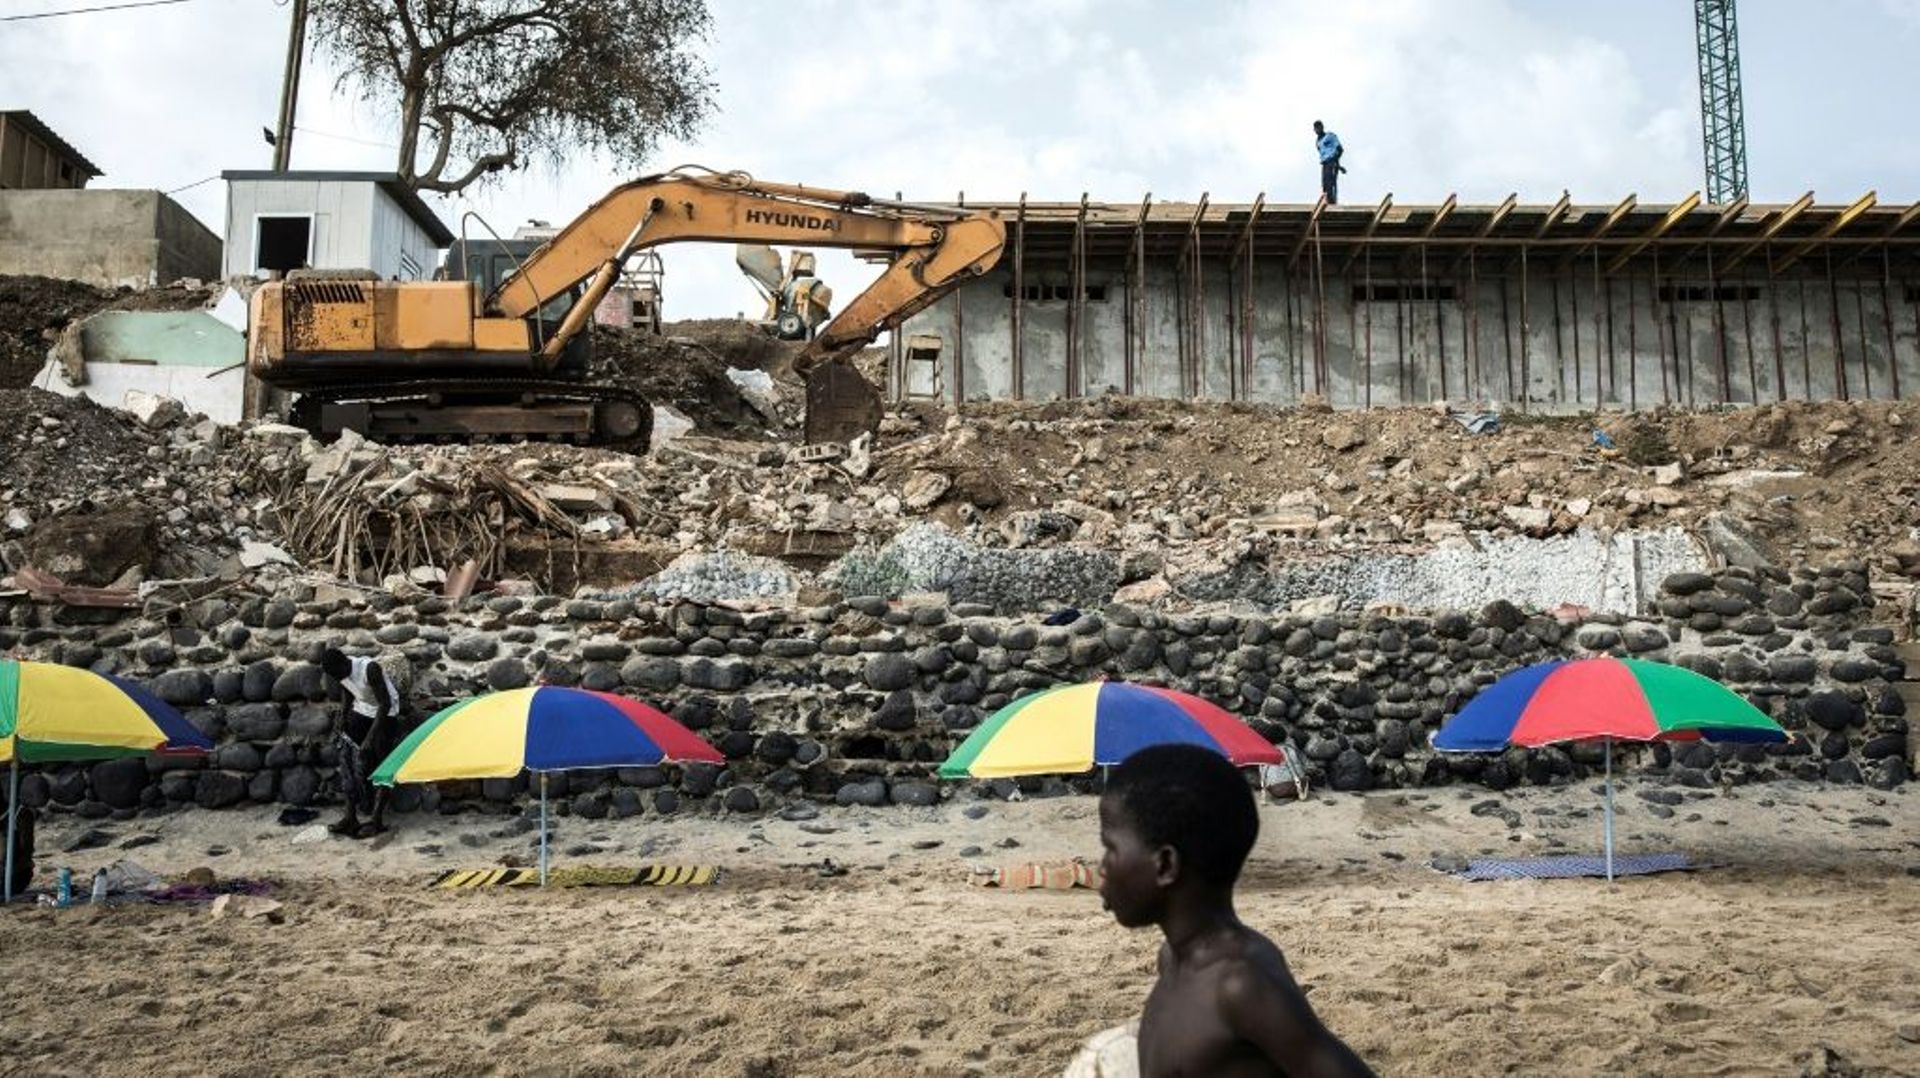 Un bulldozer sur un chantier de construction, le 27 juin 2020 sur la plage de Mamelles, à Dakar